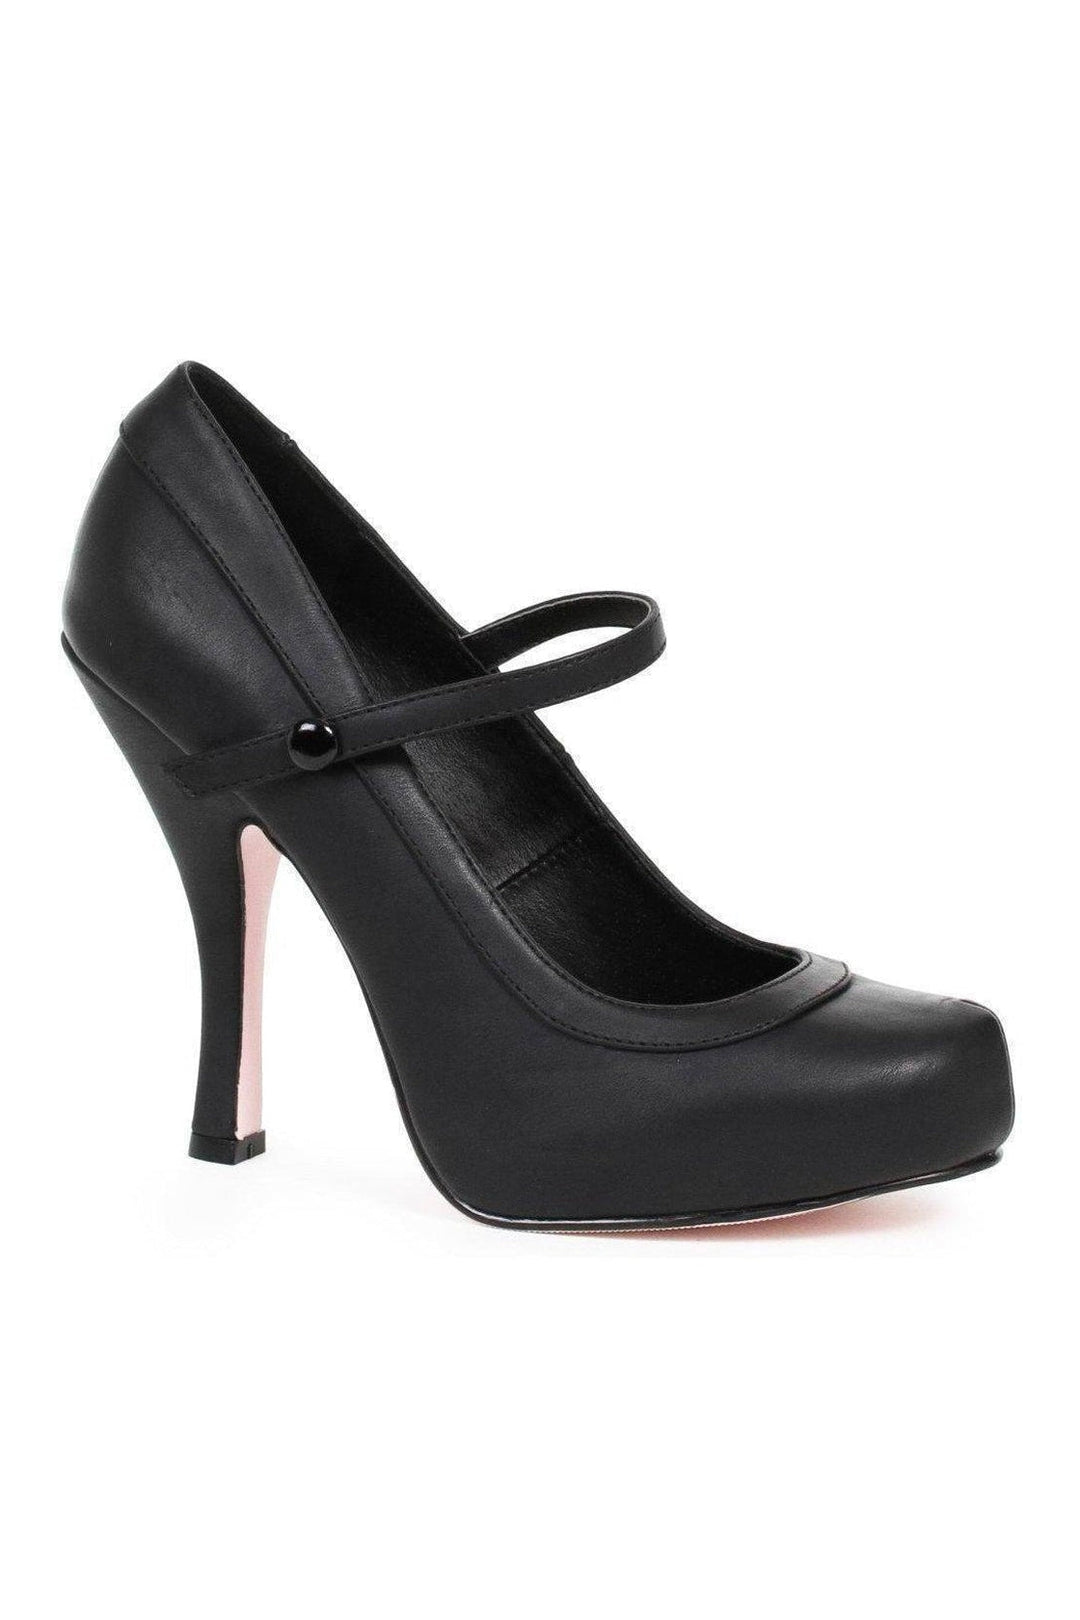 423-BABYDOLL Costume Pump | Black Faux Leather-Ellie Shoes-SEXYSHOES.COM